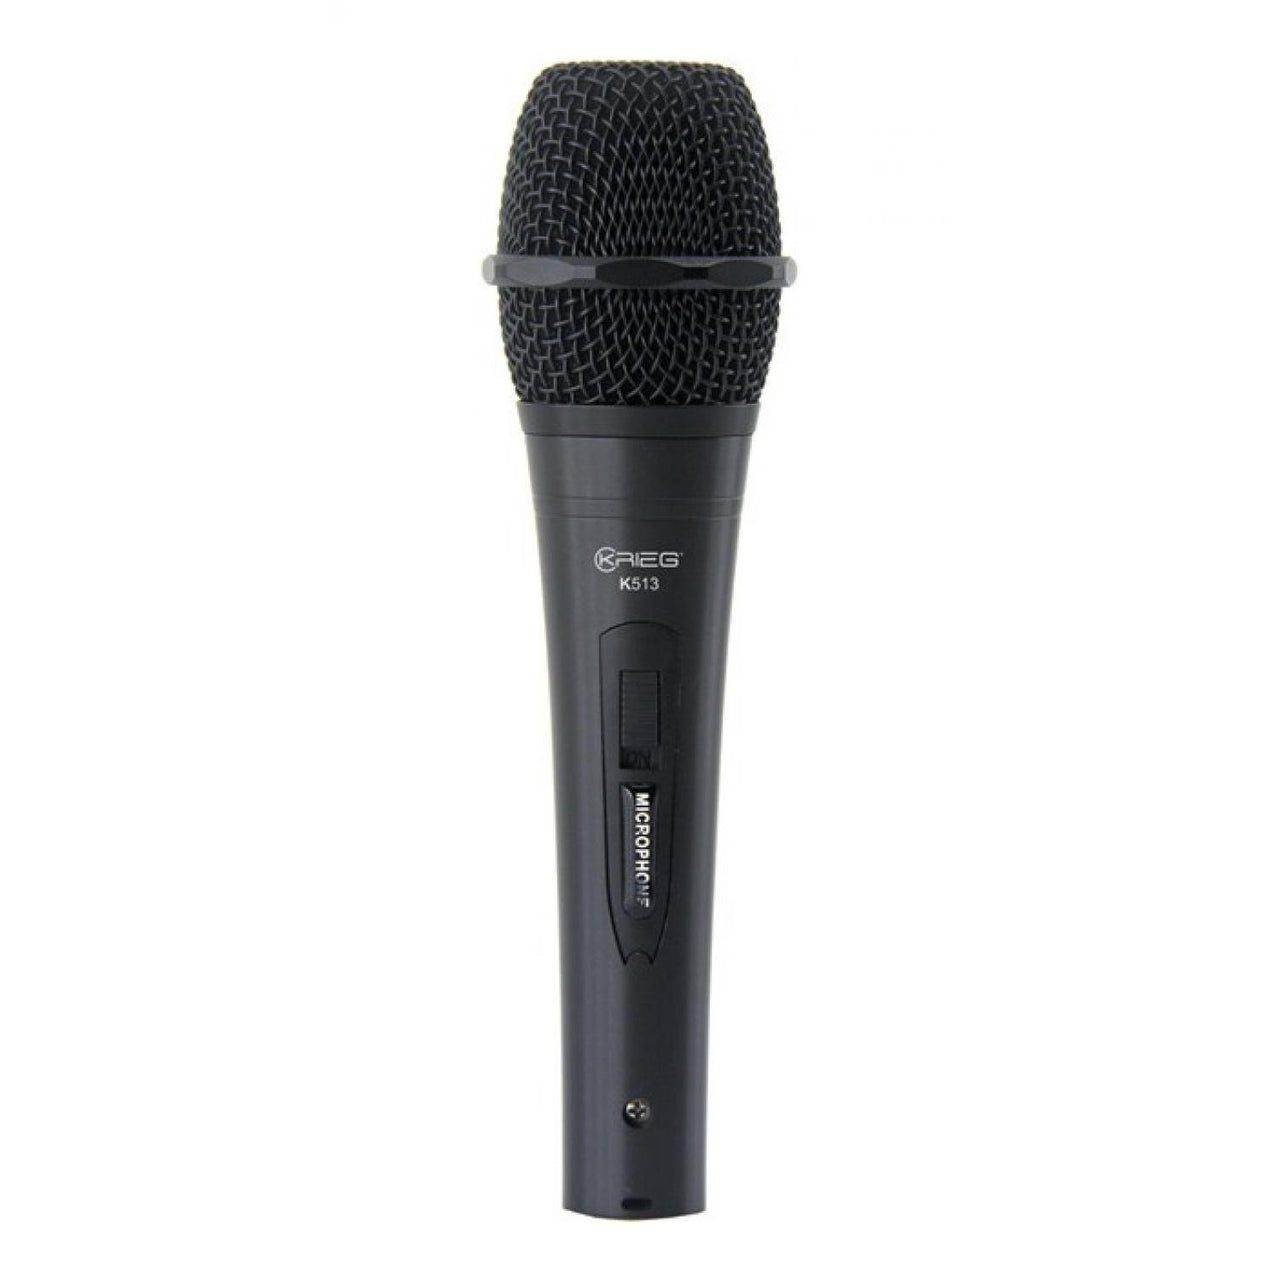 Microfono Krieg Vocal Con Cable Negro, K-513